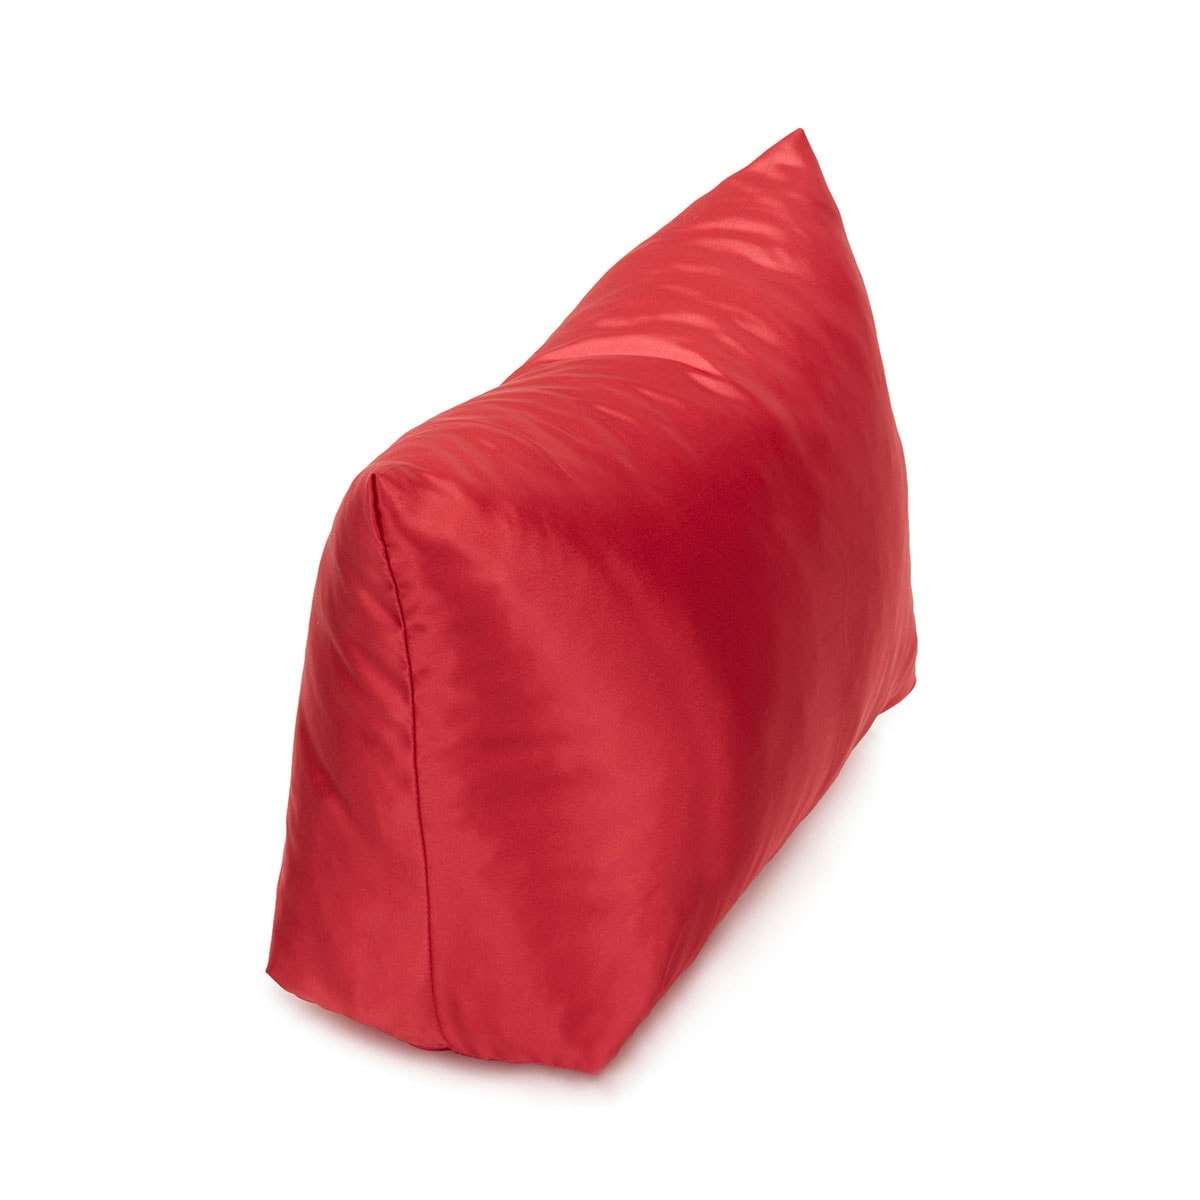 Purse Pillow for Louis Vuitton Neverfull Bag Models, Bag Shaper Pillow -  Zepmade